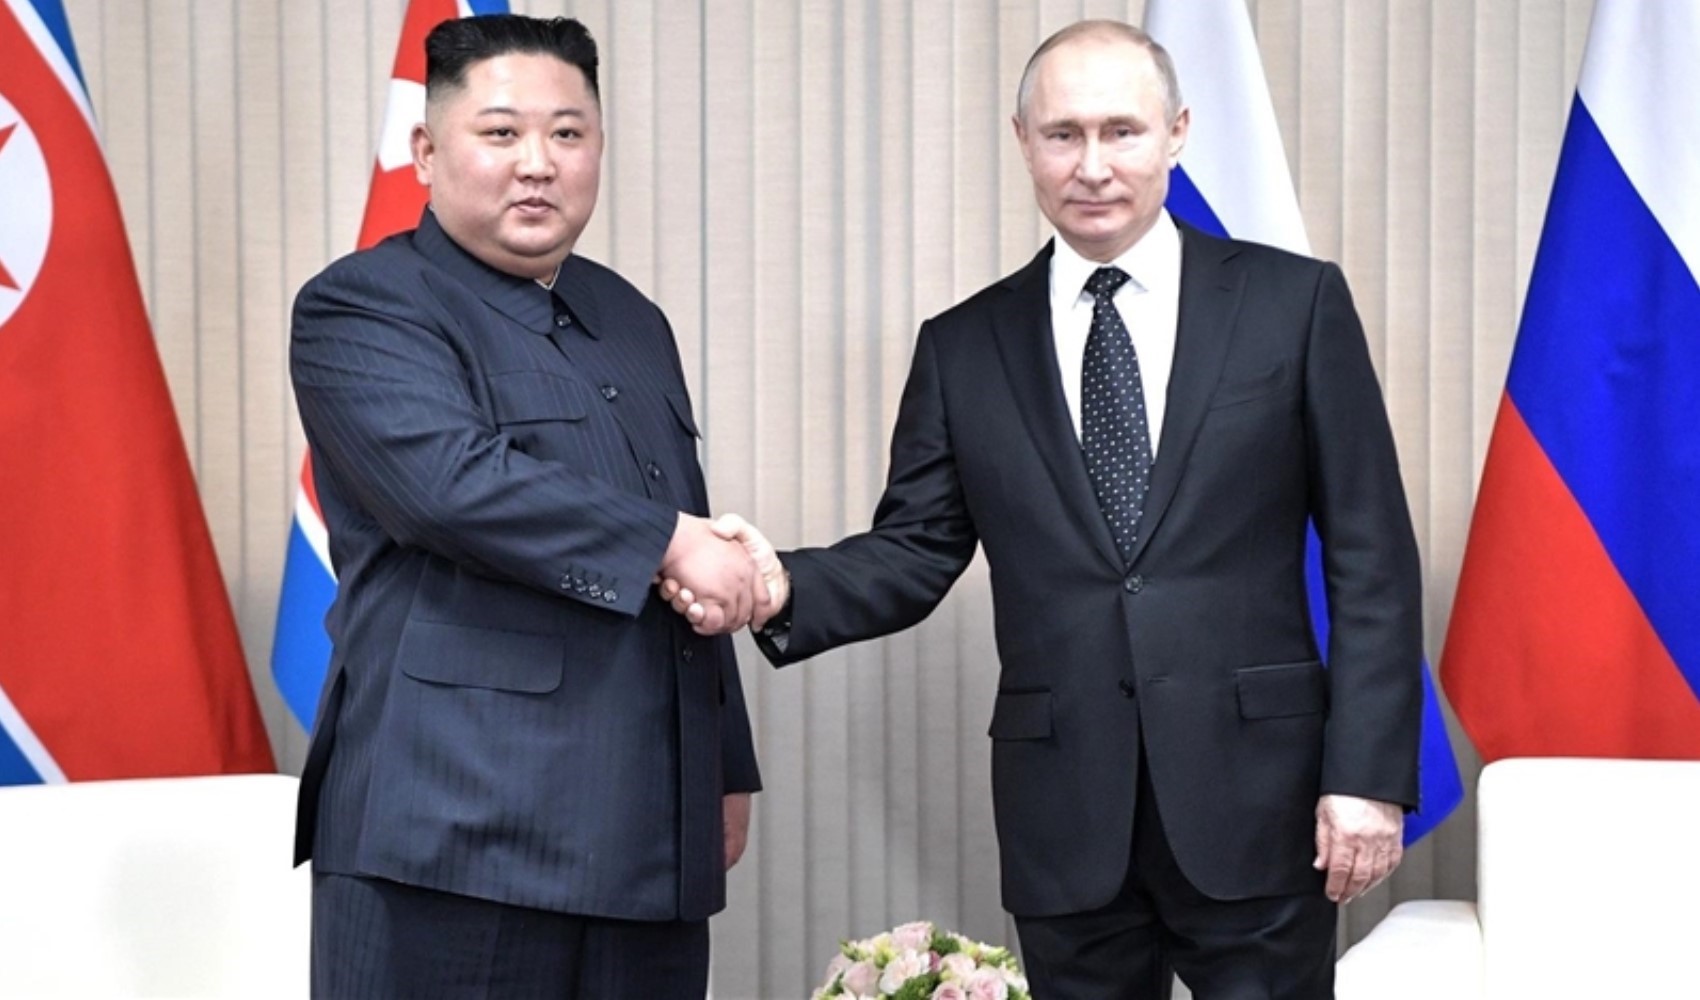 Kremlin'den açıklama geldi: Vladimir Putin Kuzey Kore'ye gidiyor